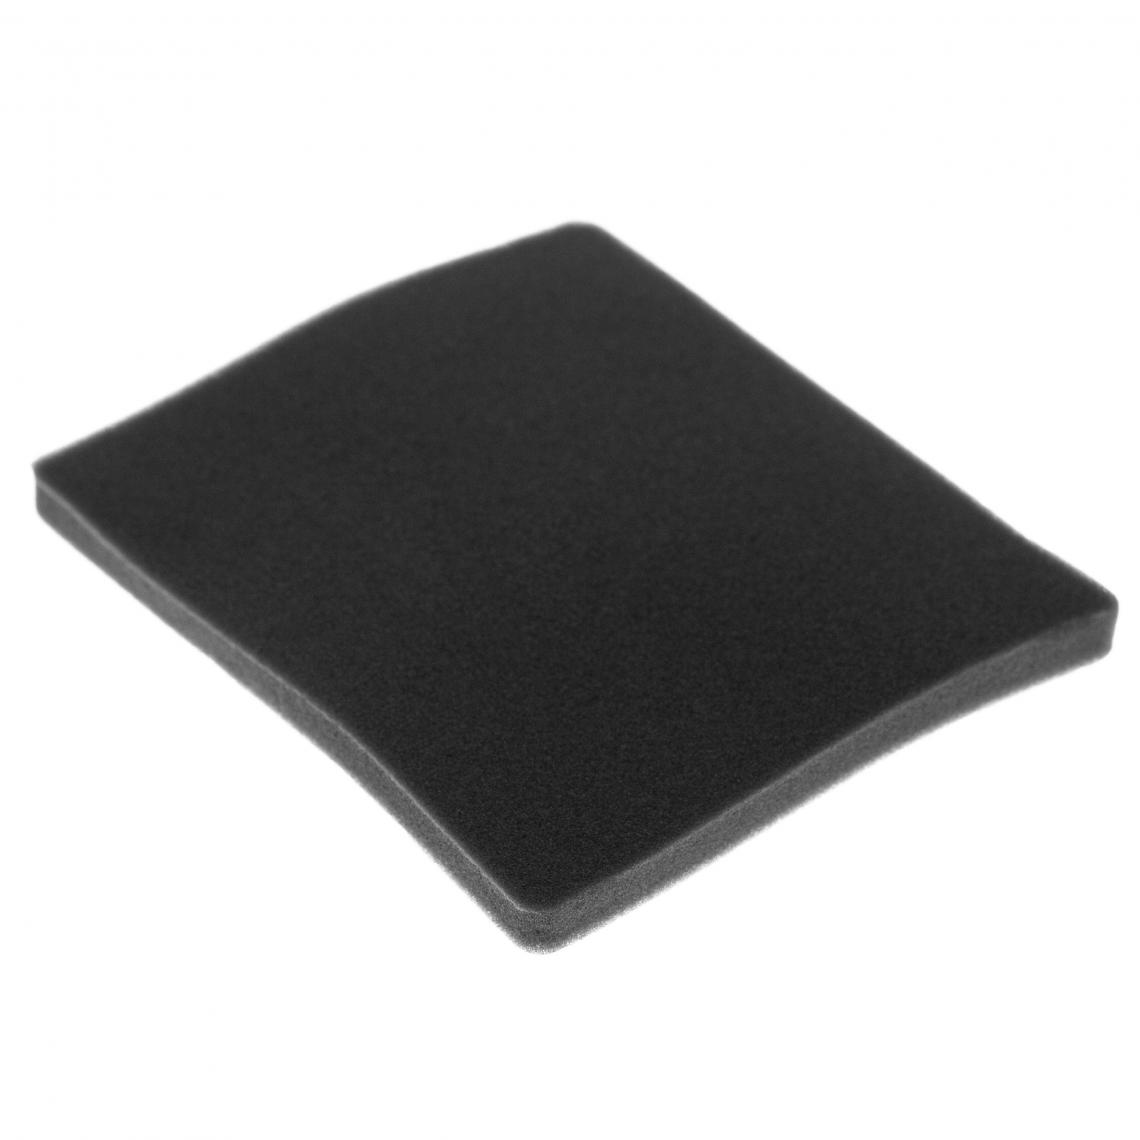 Vhbw - vhbw Filtre compatible avec Electrolux ZAM6103 (910286628) aspirateur - filtre de sortie d'air (filtre éponge), noir - Accessoire entretien des sols